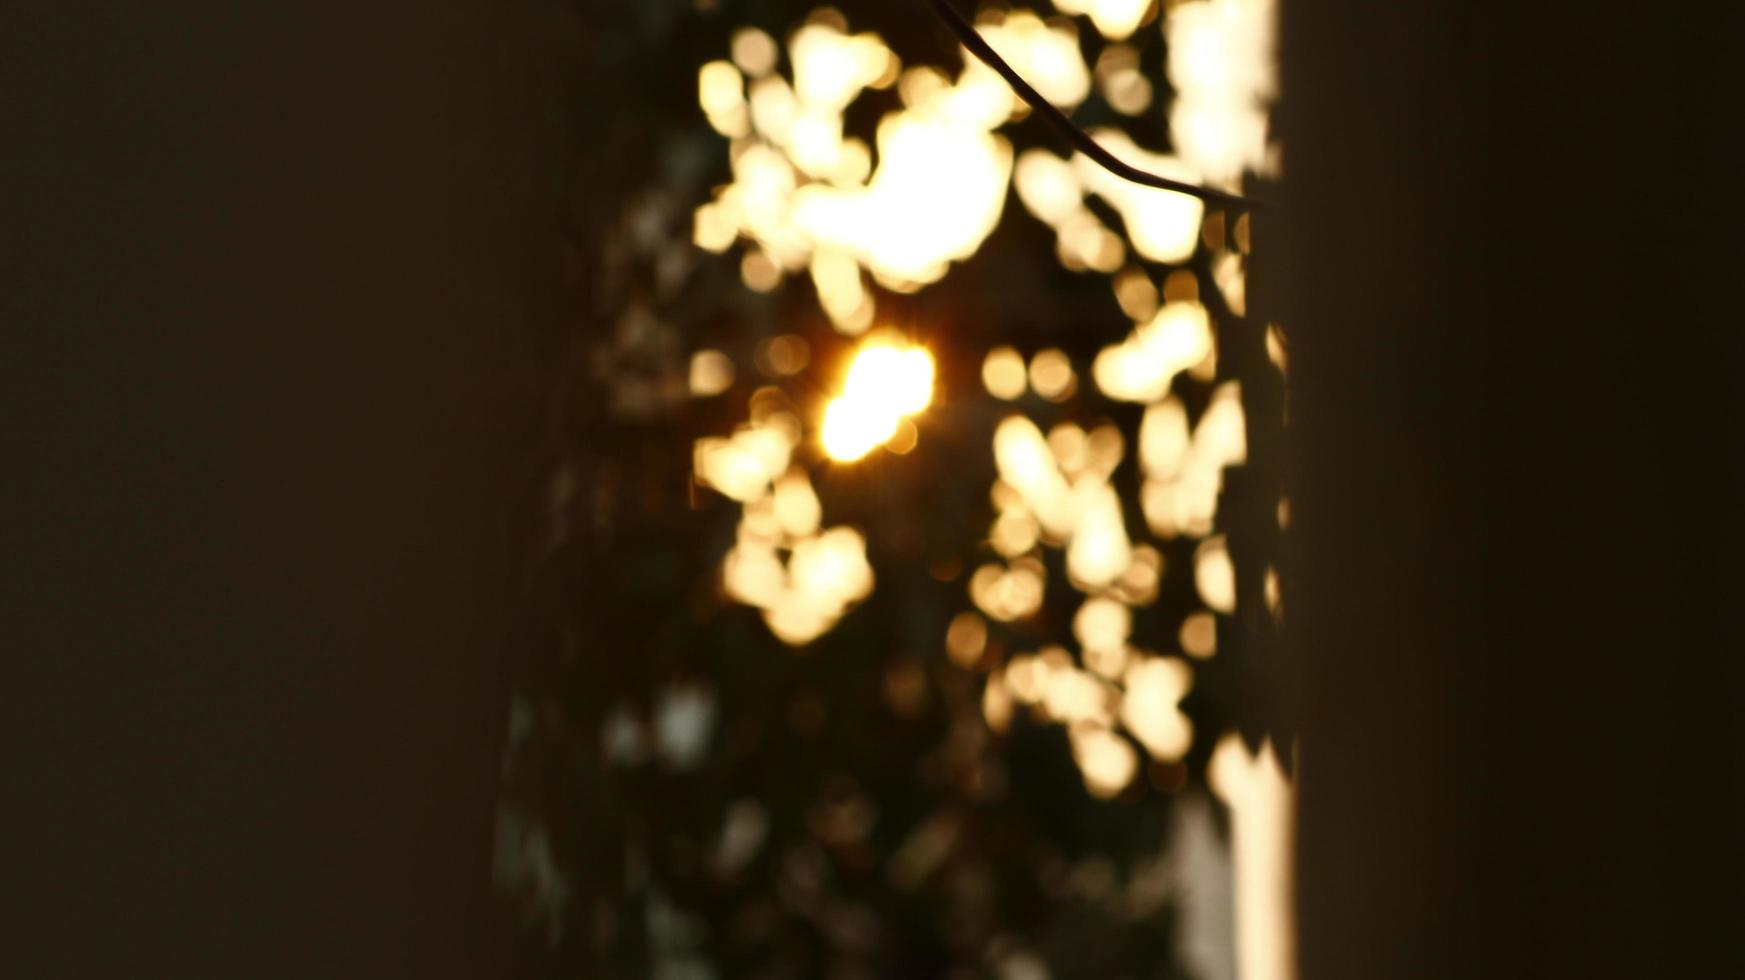 sol brilhando através das folhas das árvores no jardim ao ar livre em karachi paquistão 2022 foto